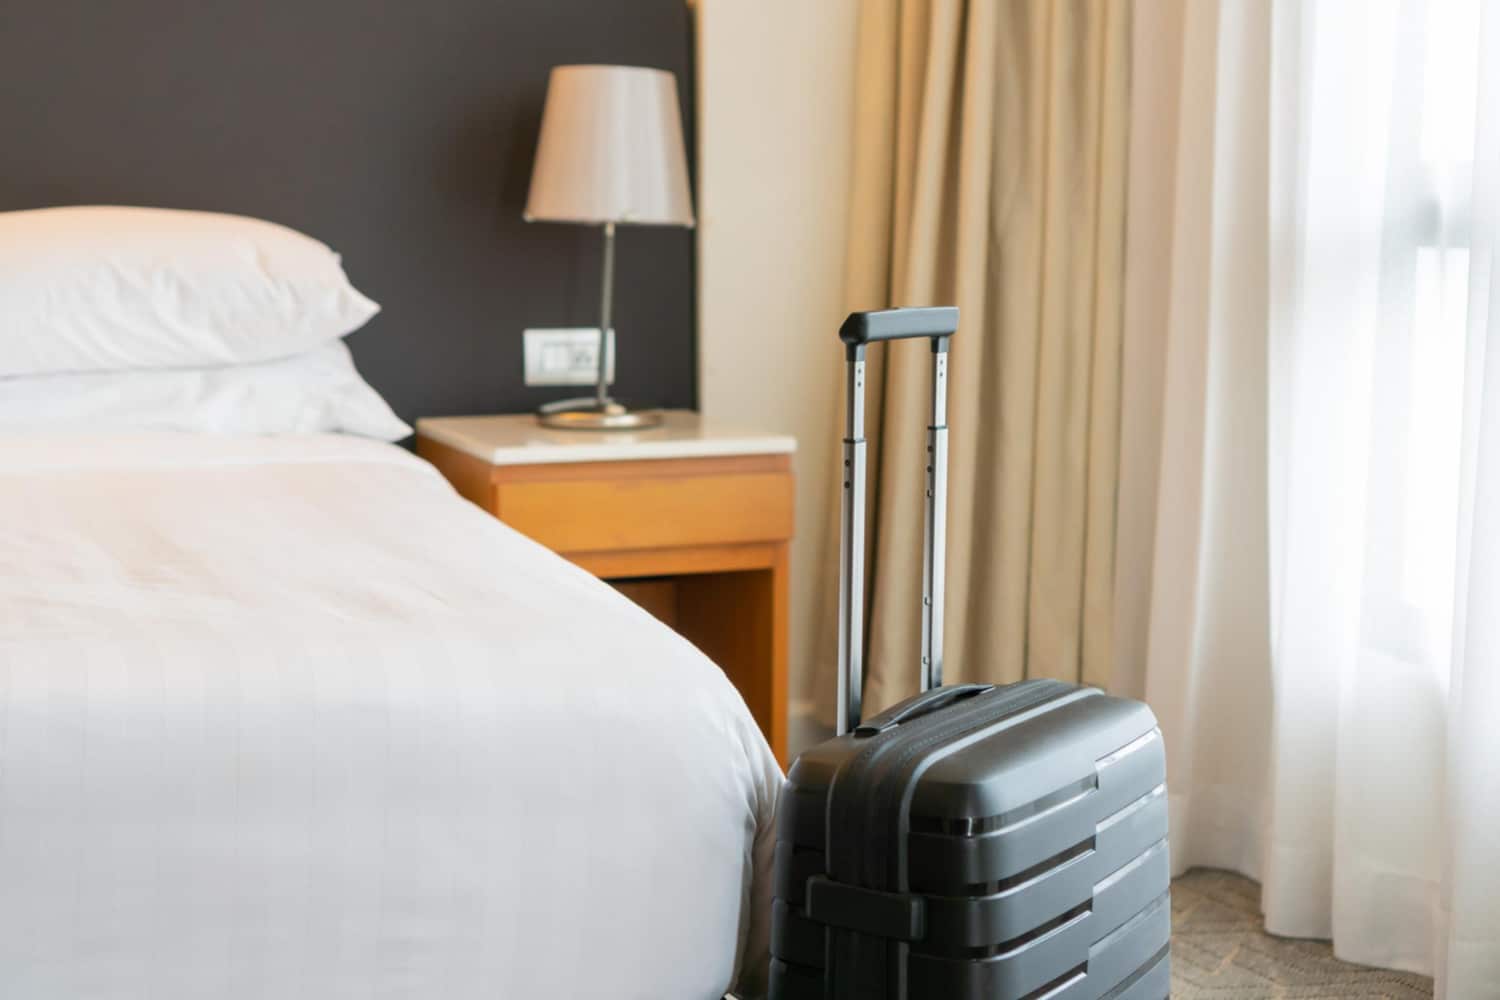 Hoteles proyectan ocupación del 72% para vacaciones de medio periodo lectivo